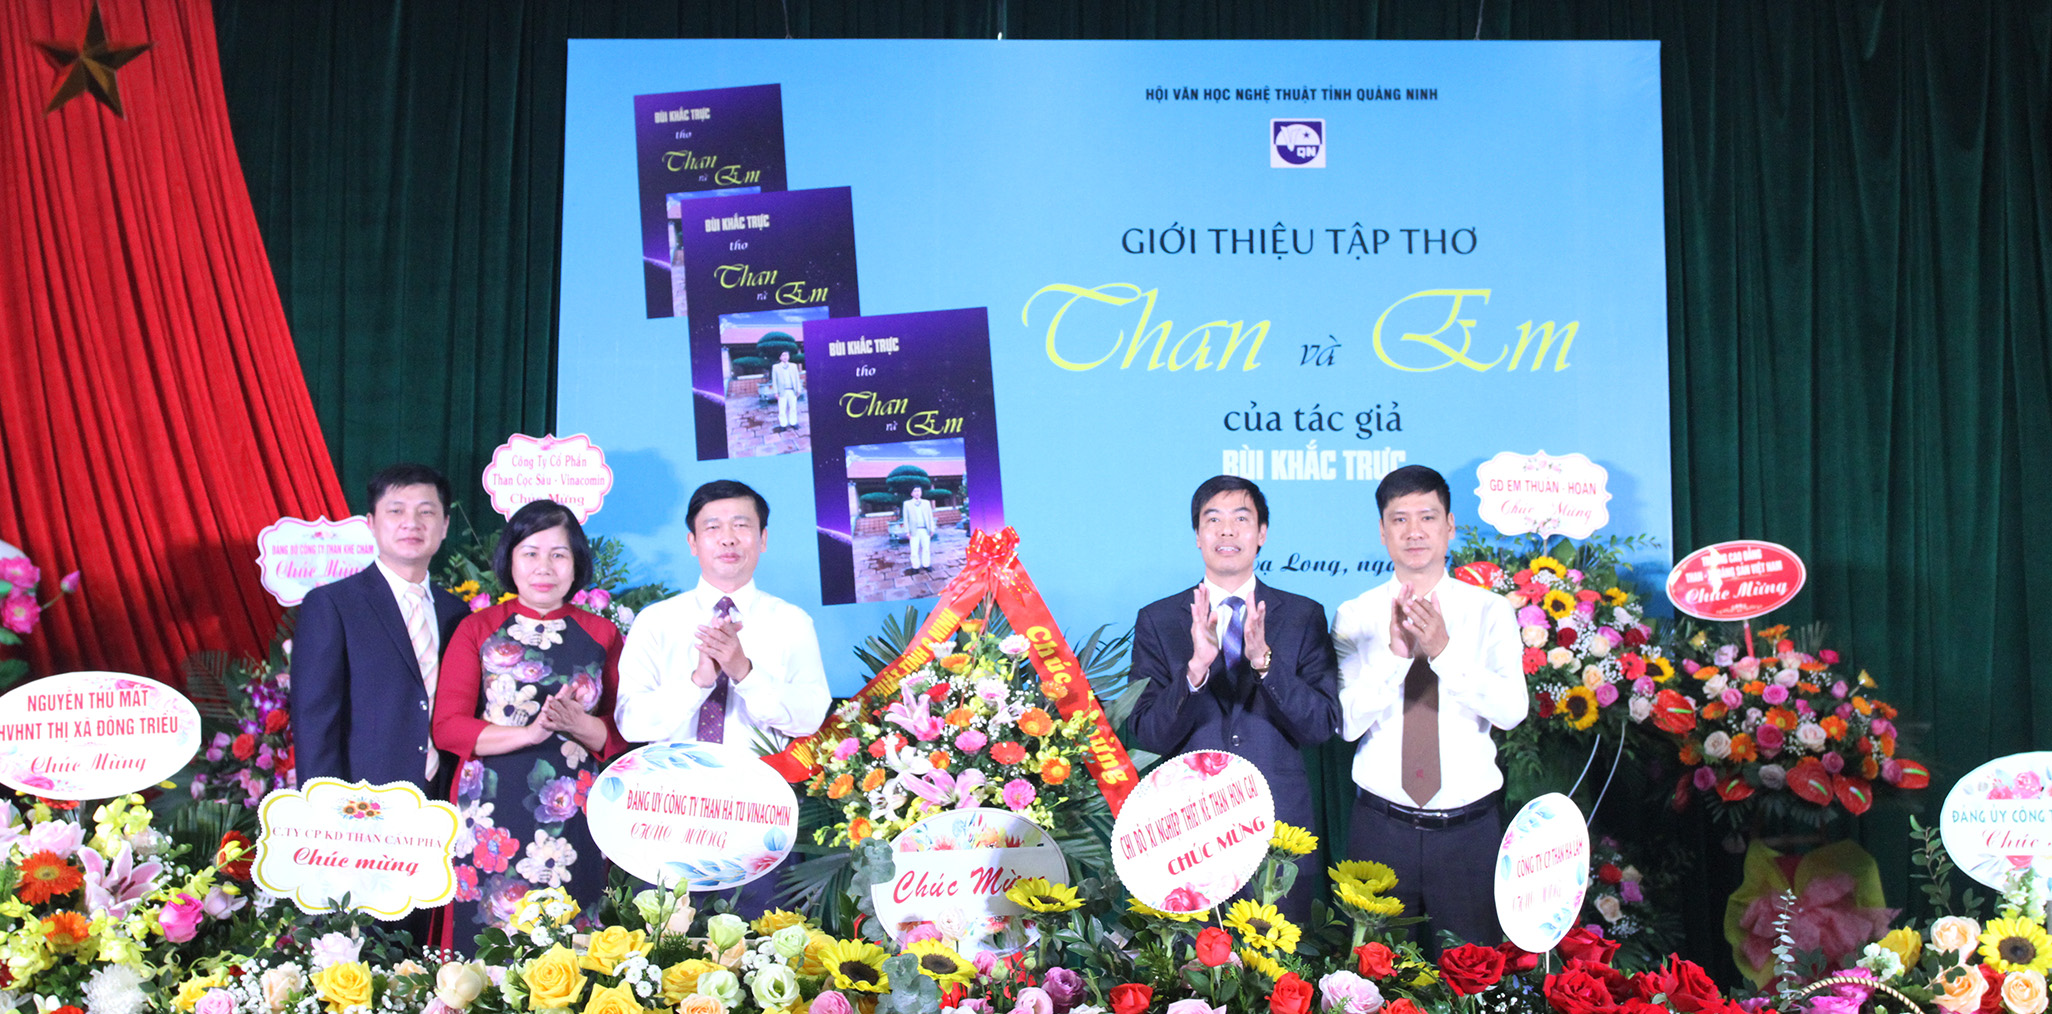 Lãnh đạo Hội VHNT Quảng Ninh tặng hoa chúc mừng tác giả.